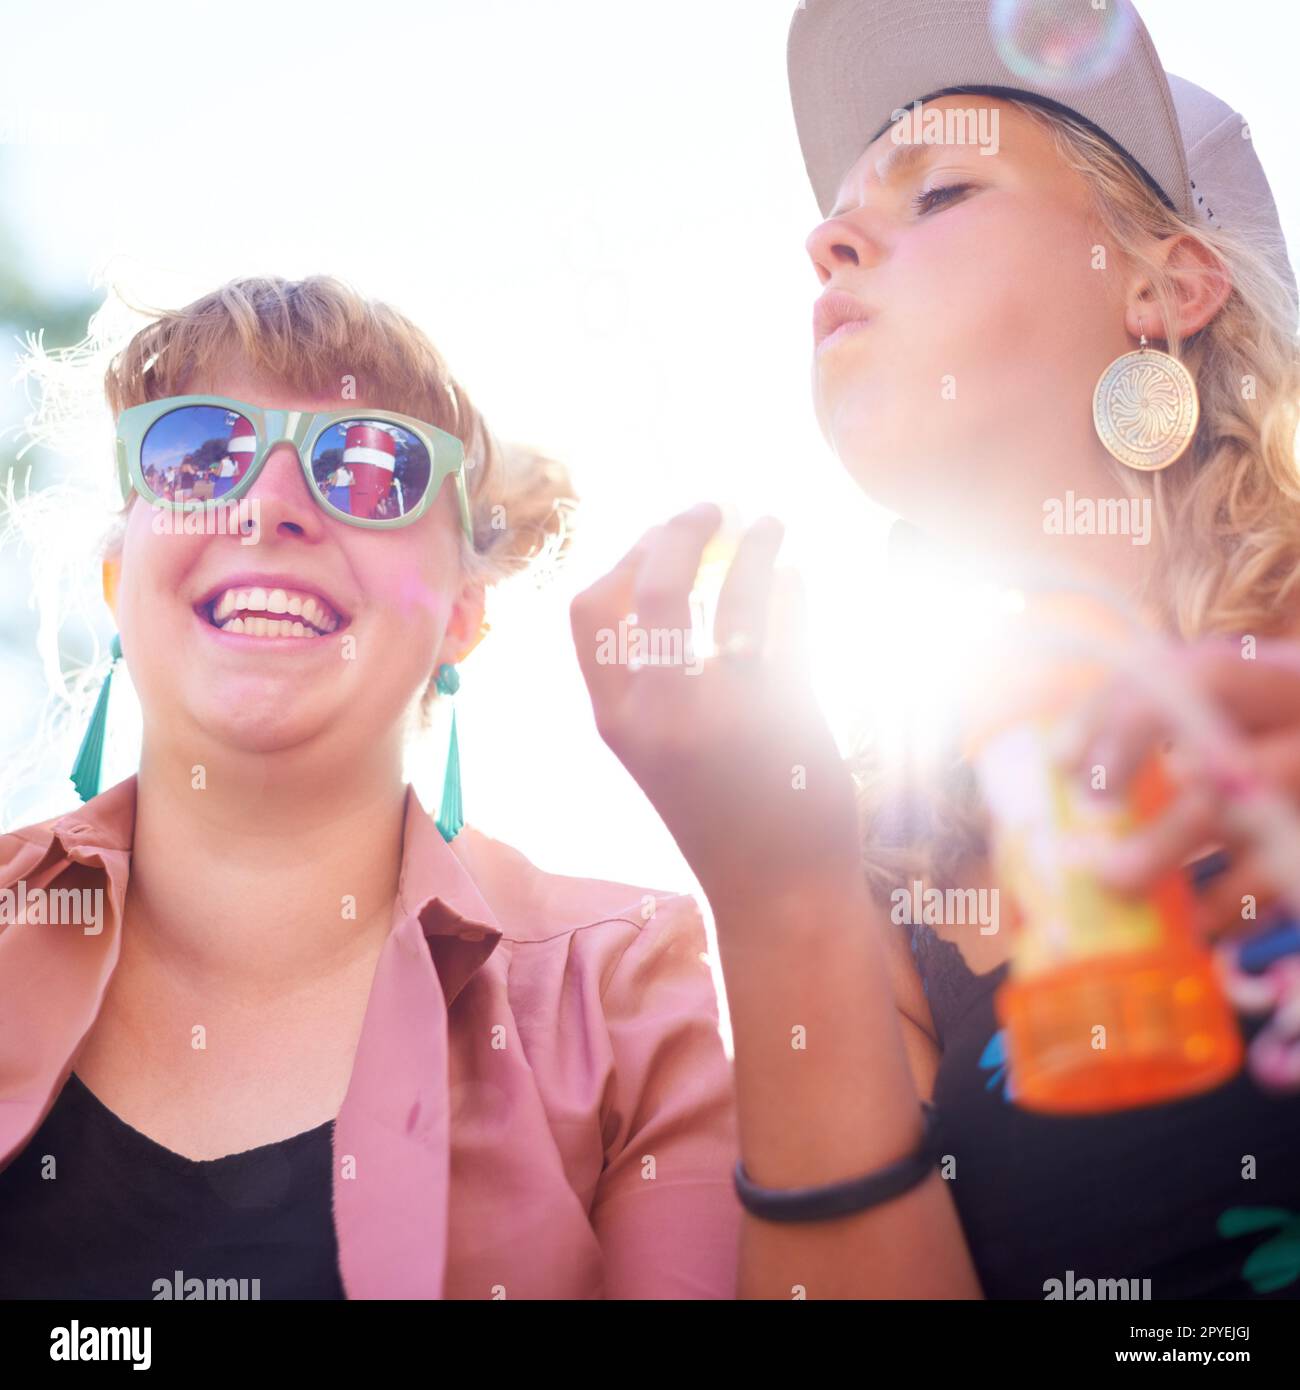 Godendo del lato più leggero della vita. una donna che soffia bolle fuori mentre il suo amico sorride accanto a lei. Foto Stock